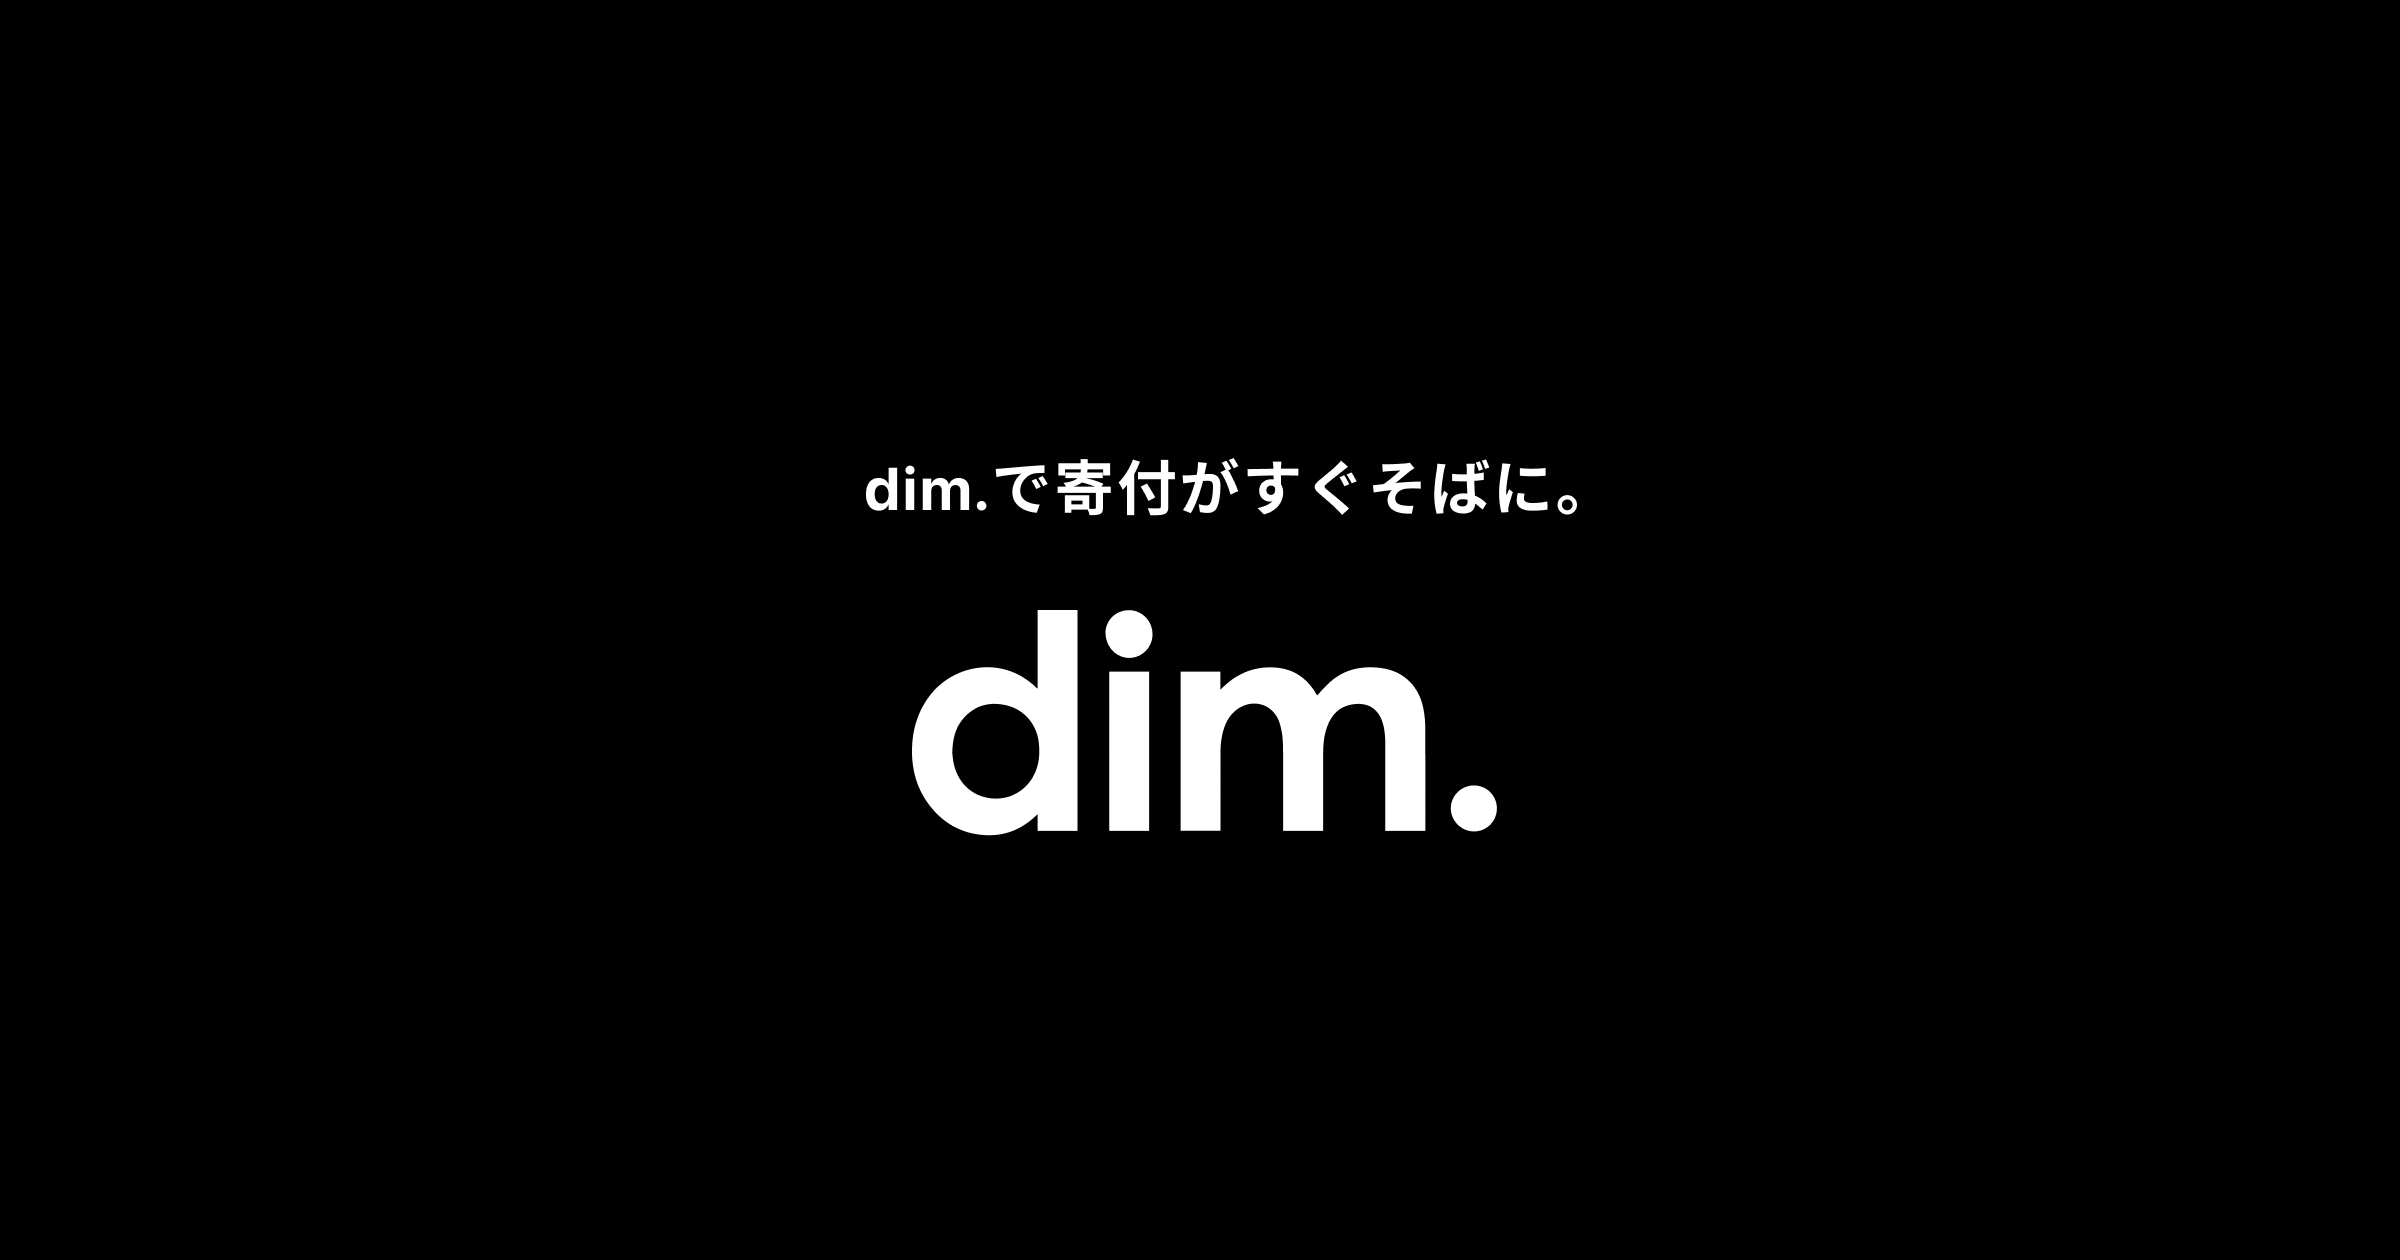 WEDの新サービス「dim.」はスマホから簡単に寄付ができるアプリだ